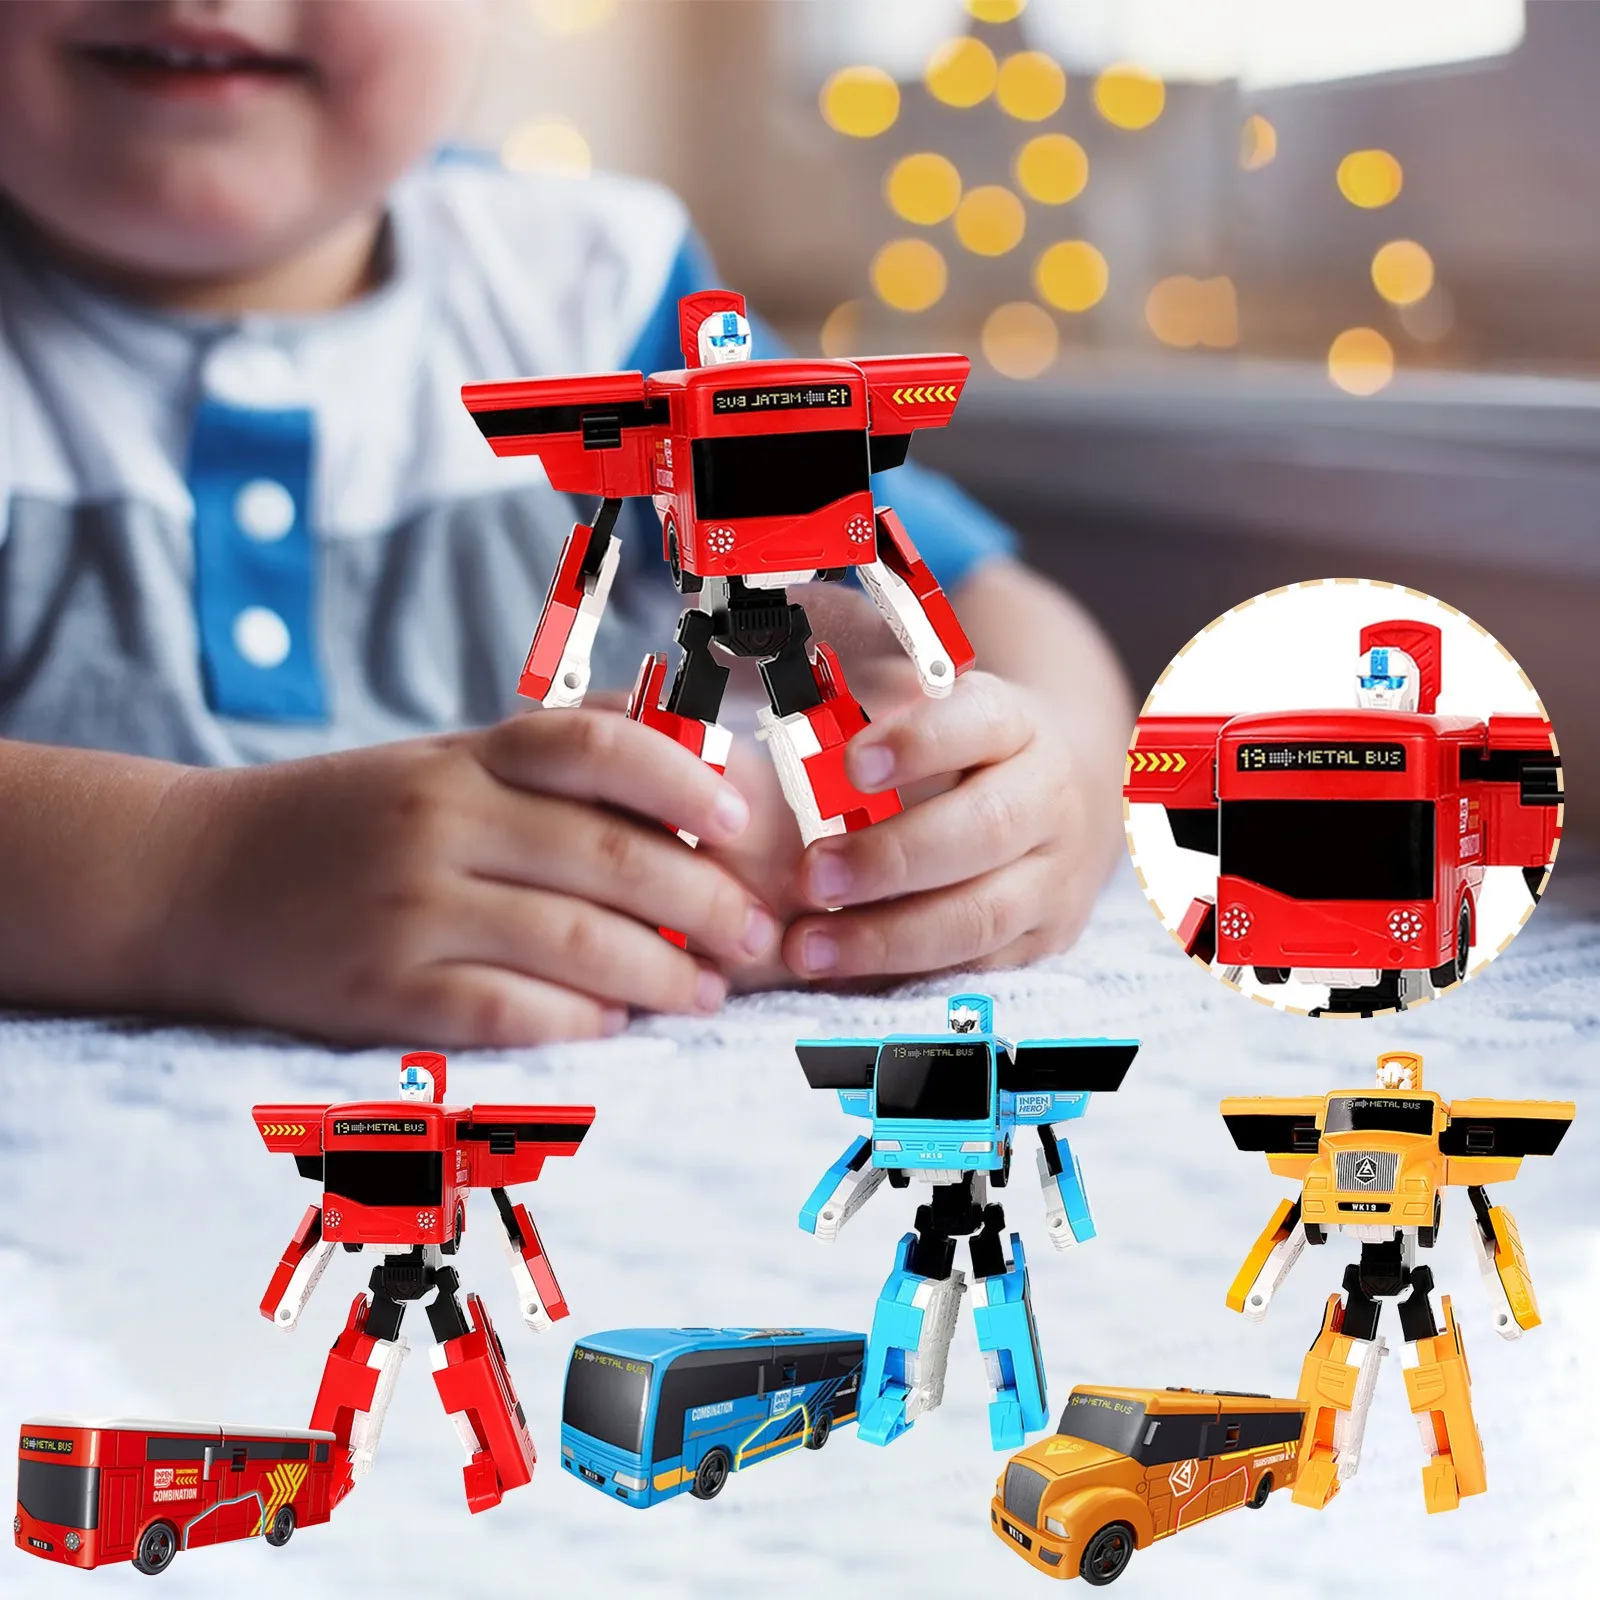 

Transformation Deformation Robot Children's Model Toy Models 2 in 1 one Step Model Deformed Car Toy for Boy Gift